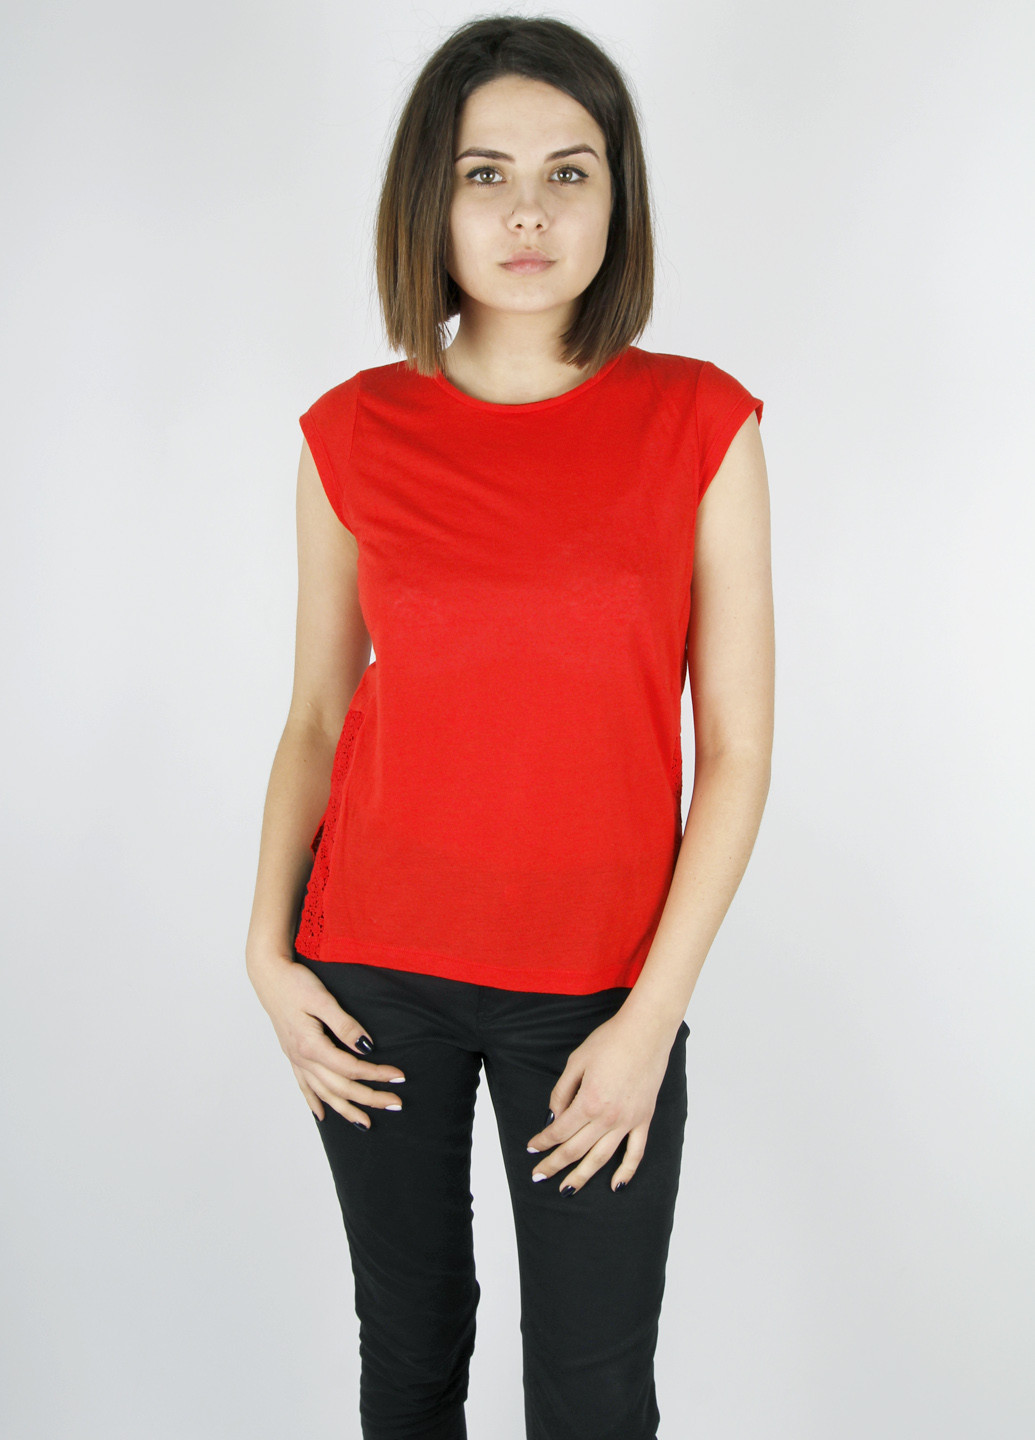 Червона літня футболка H&M